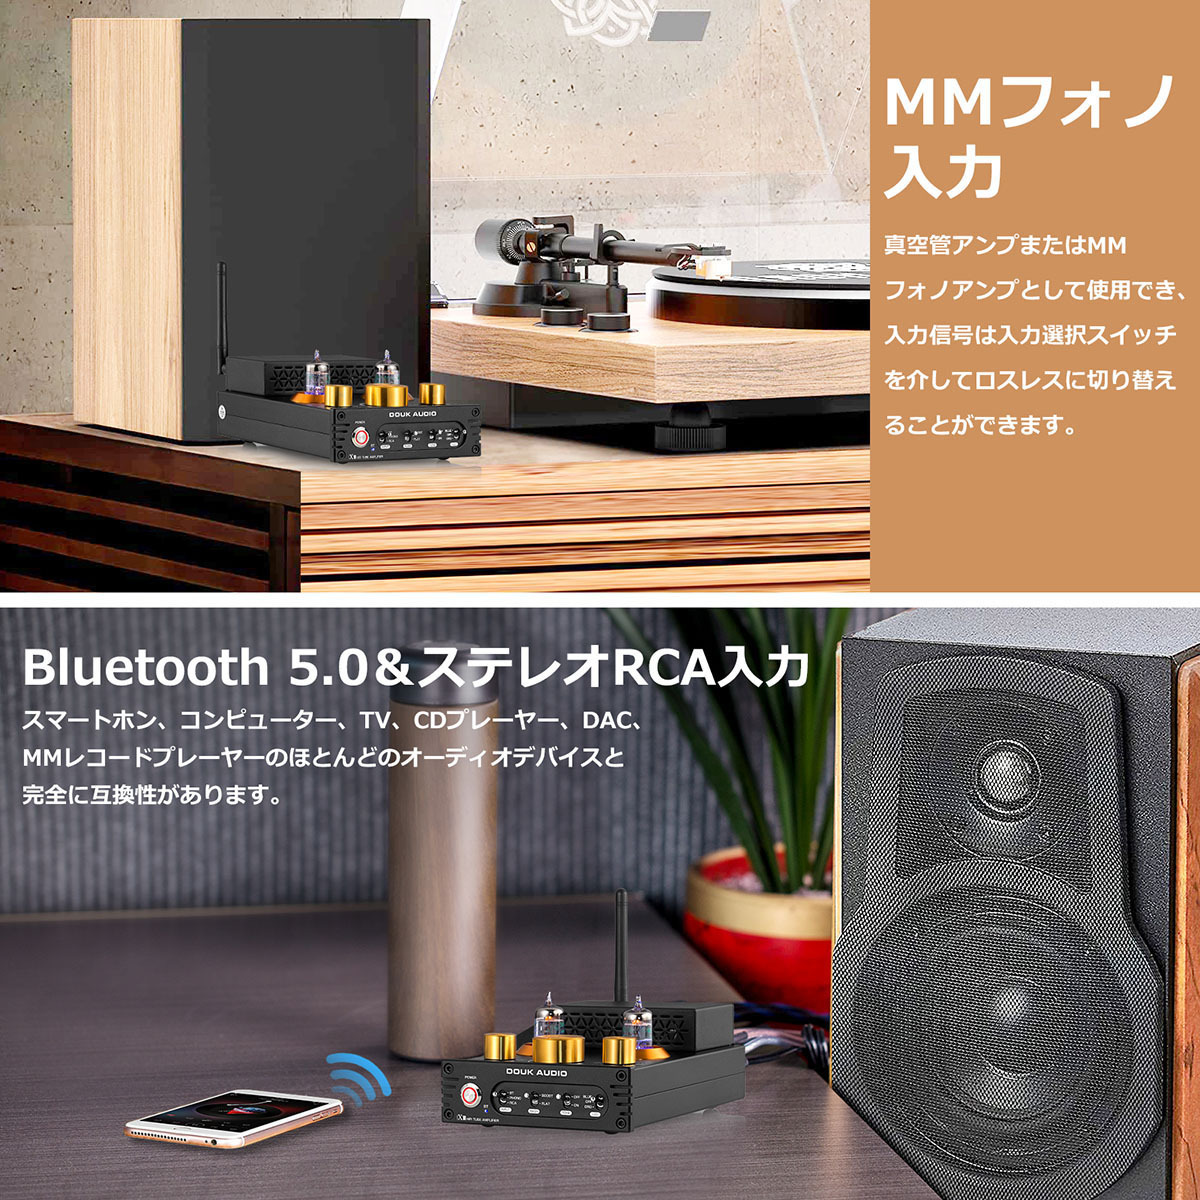 Douk Audio X1 GE5654 Bluetooth 5.0 진공관 앰프 MM 《후노안푸》 턴 테이블용 320W TDA7498E  NE5532 :SUC-X1:Nobsound - 통판 - Yahoo!쇼핑